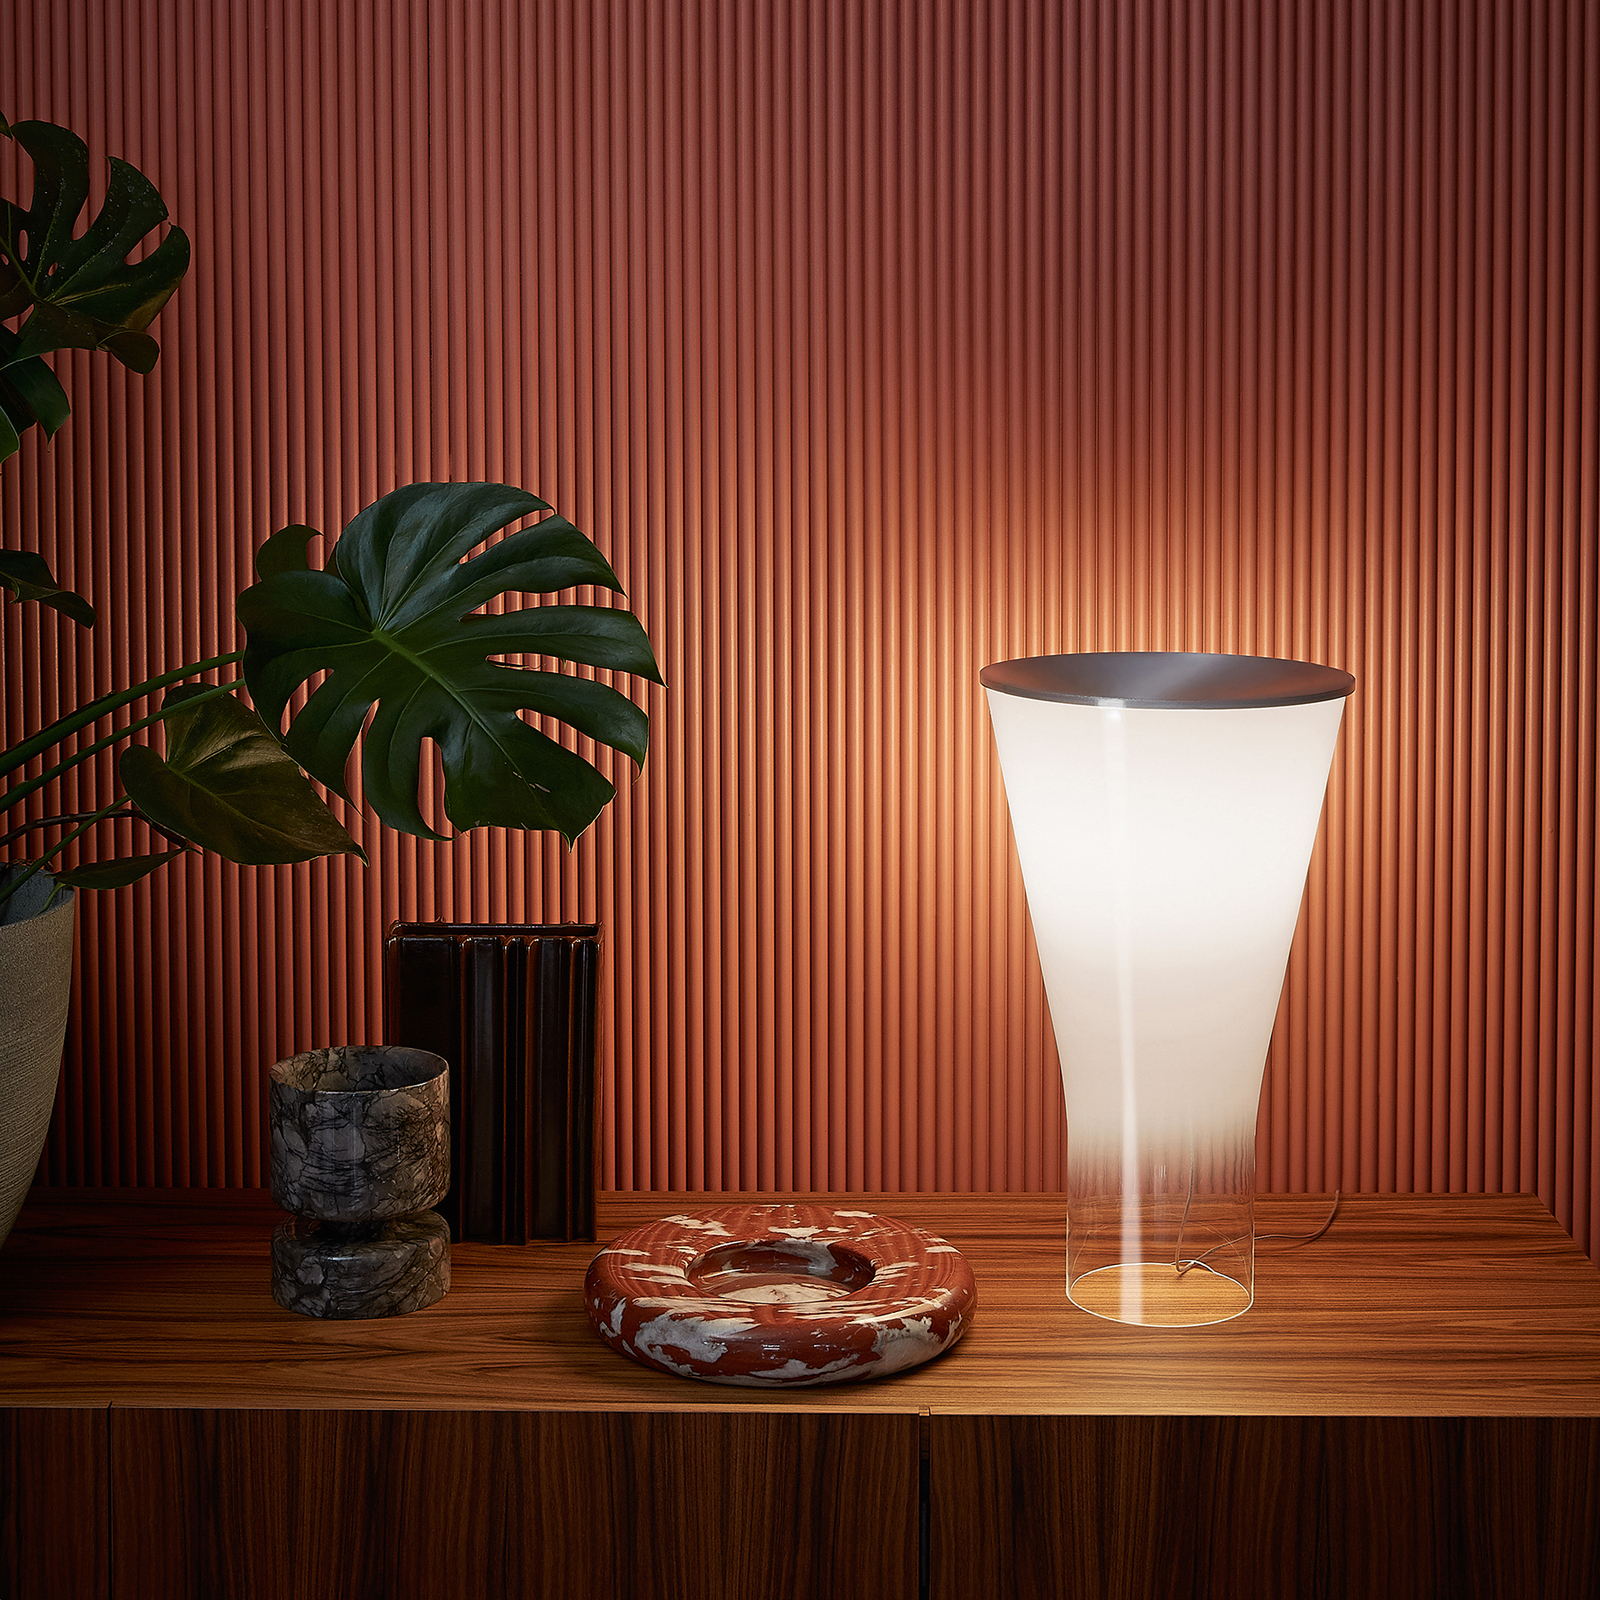 Foscarini Soffio lampe de table LED